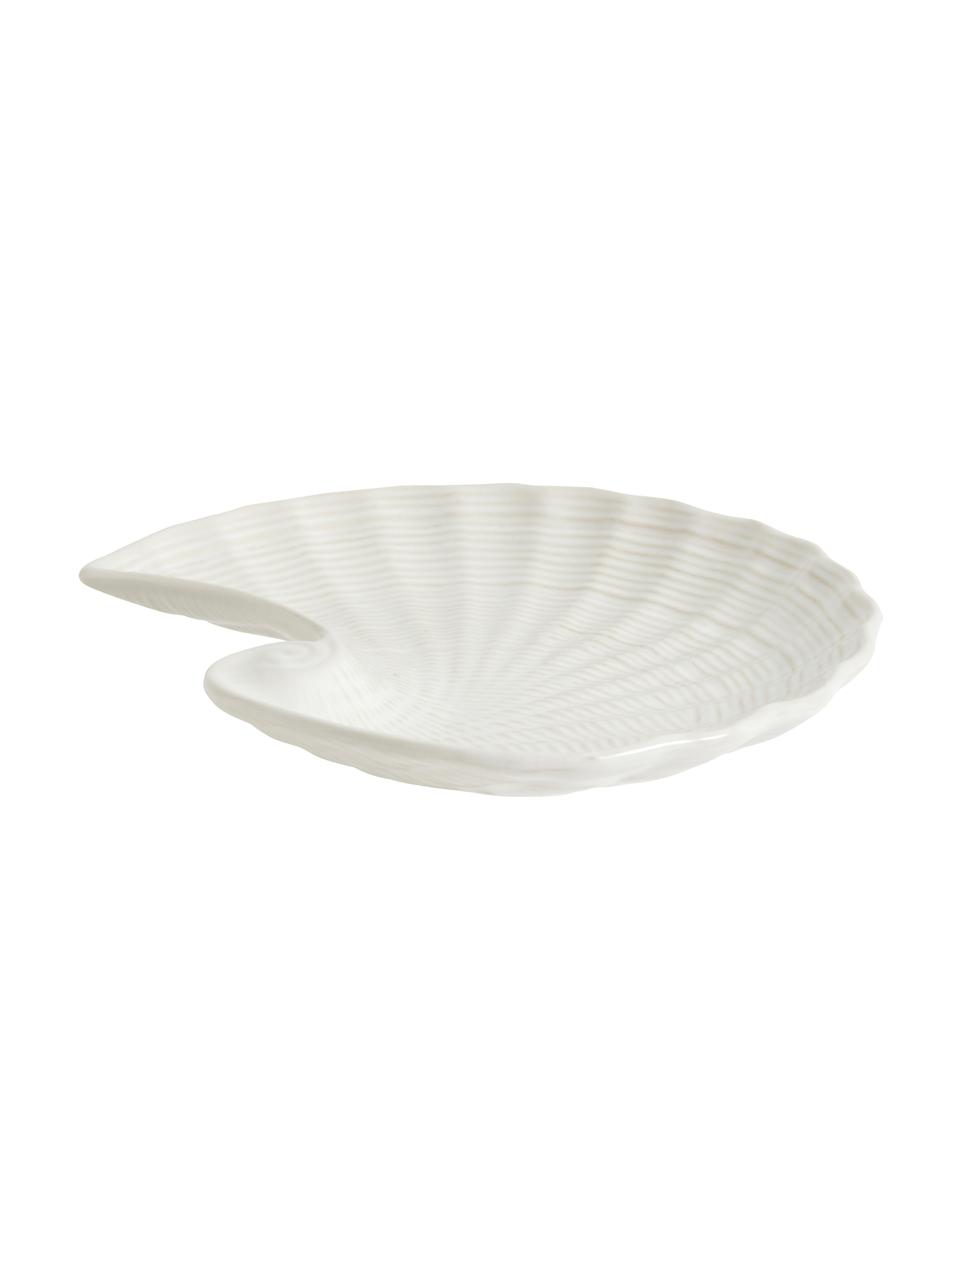 Miska dekoracyjna Gullfoss, Ceramika, Biały, S 18 x G 16 cm